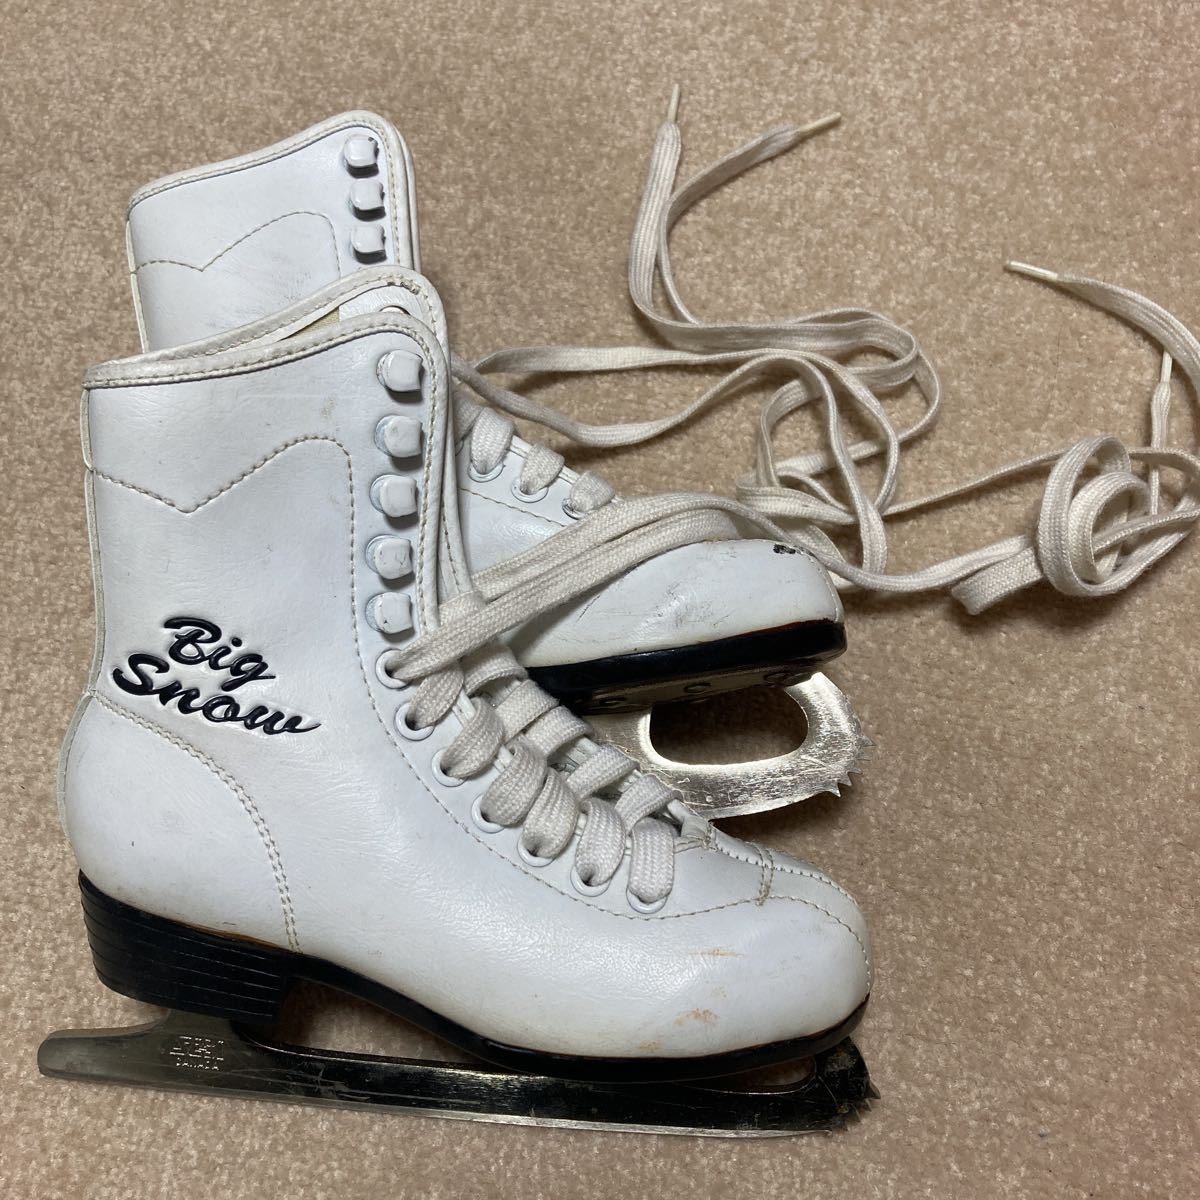 訳あり品送料無料 フィギュアスケート靴コスギ+Pattern99 24.5センチ 